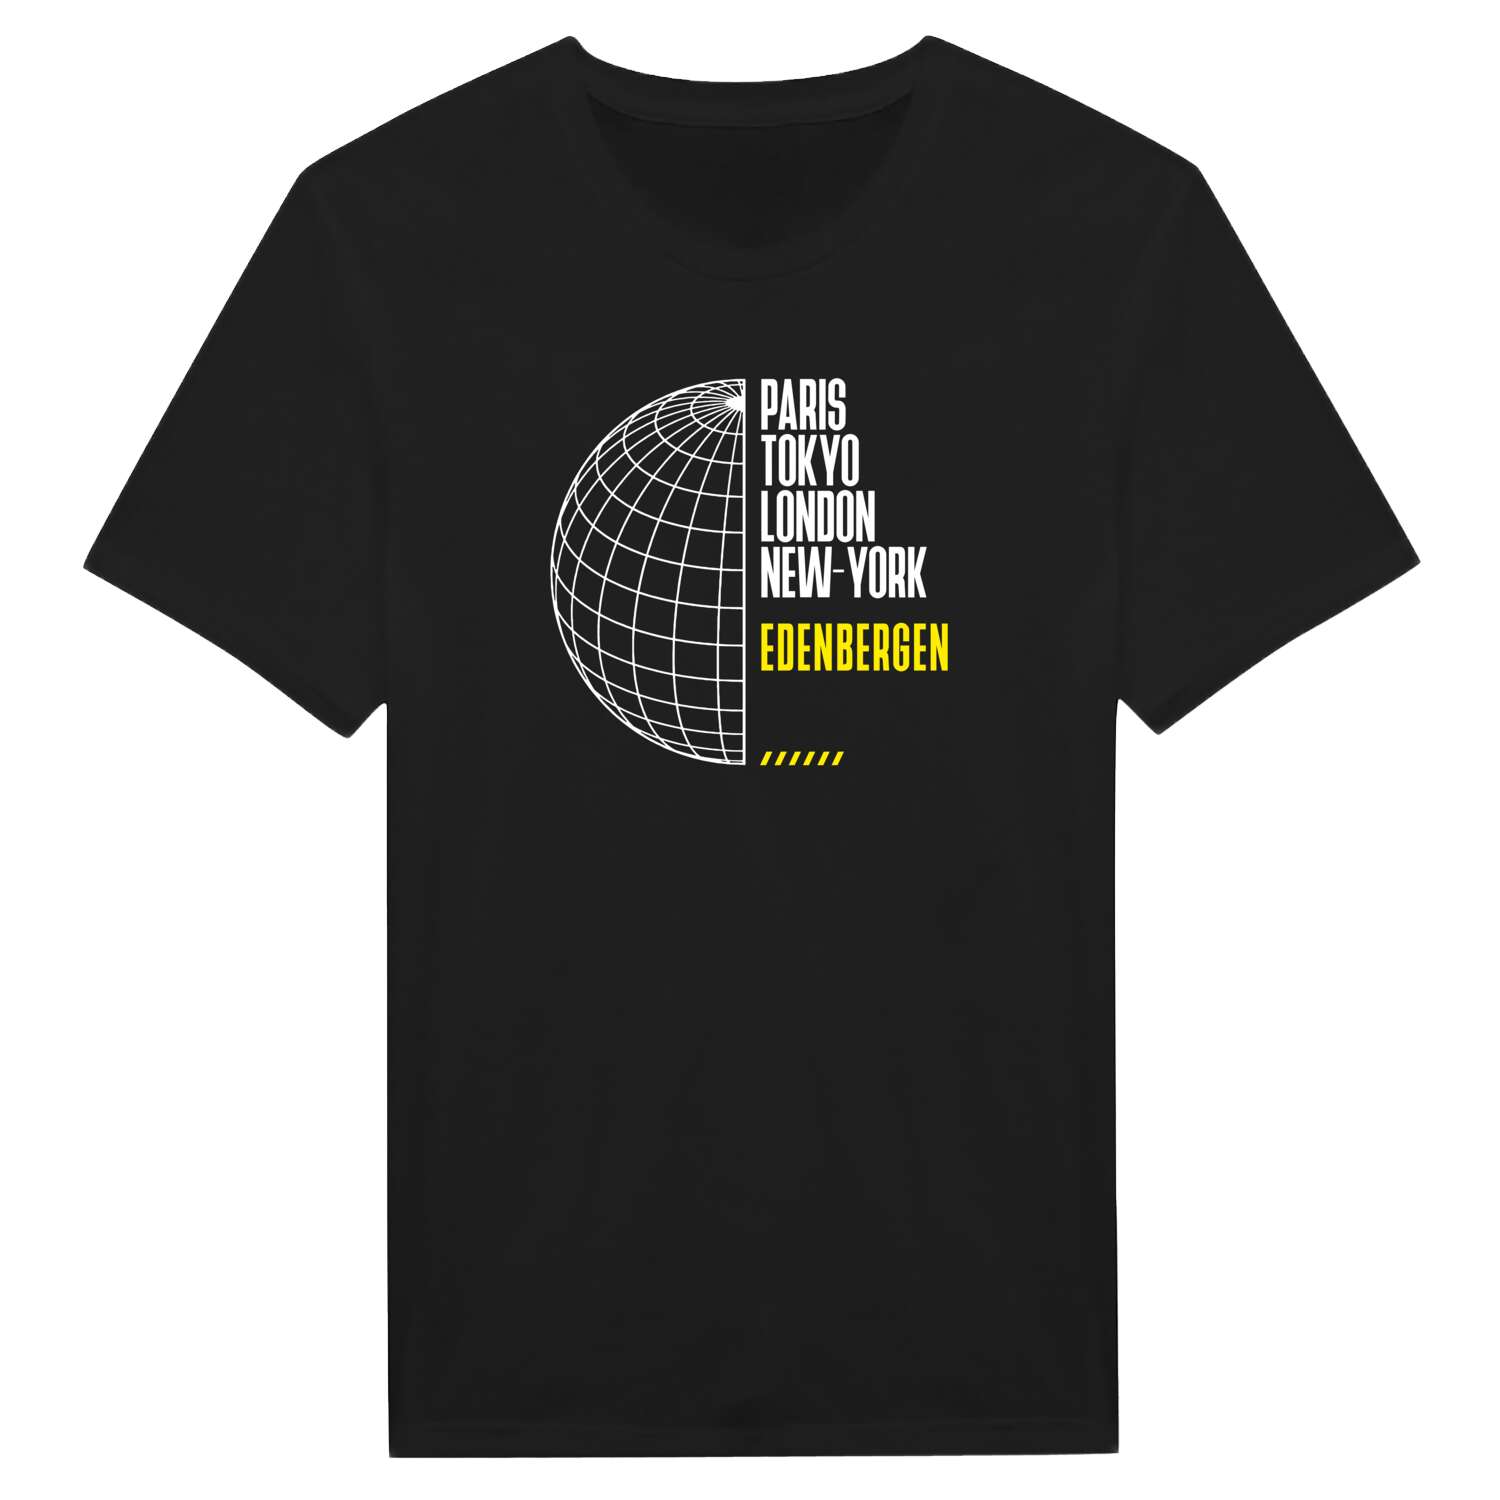 Edenbergen T-Shirt »Paris Tokyo London«